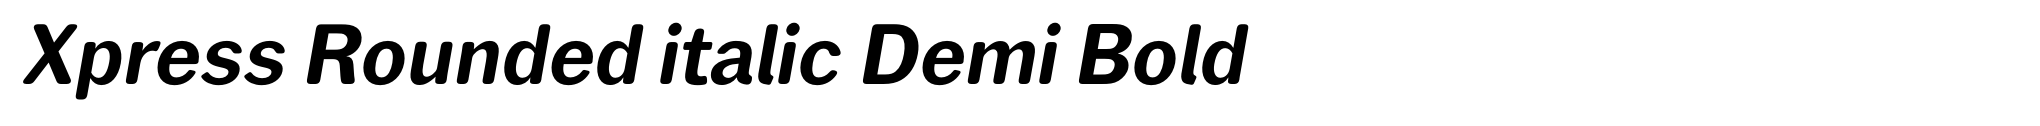 Xpress Rounded italic Demi Bold image